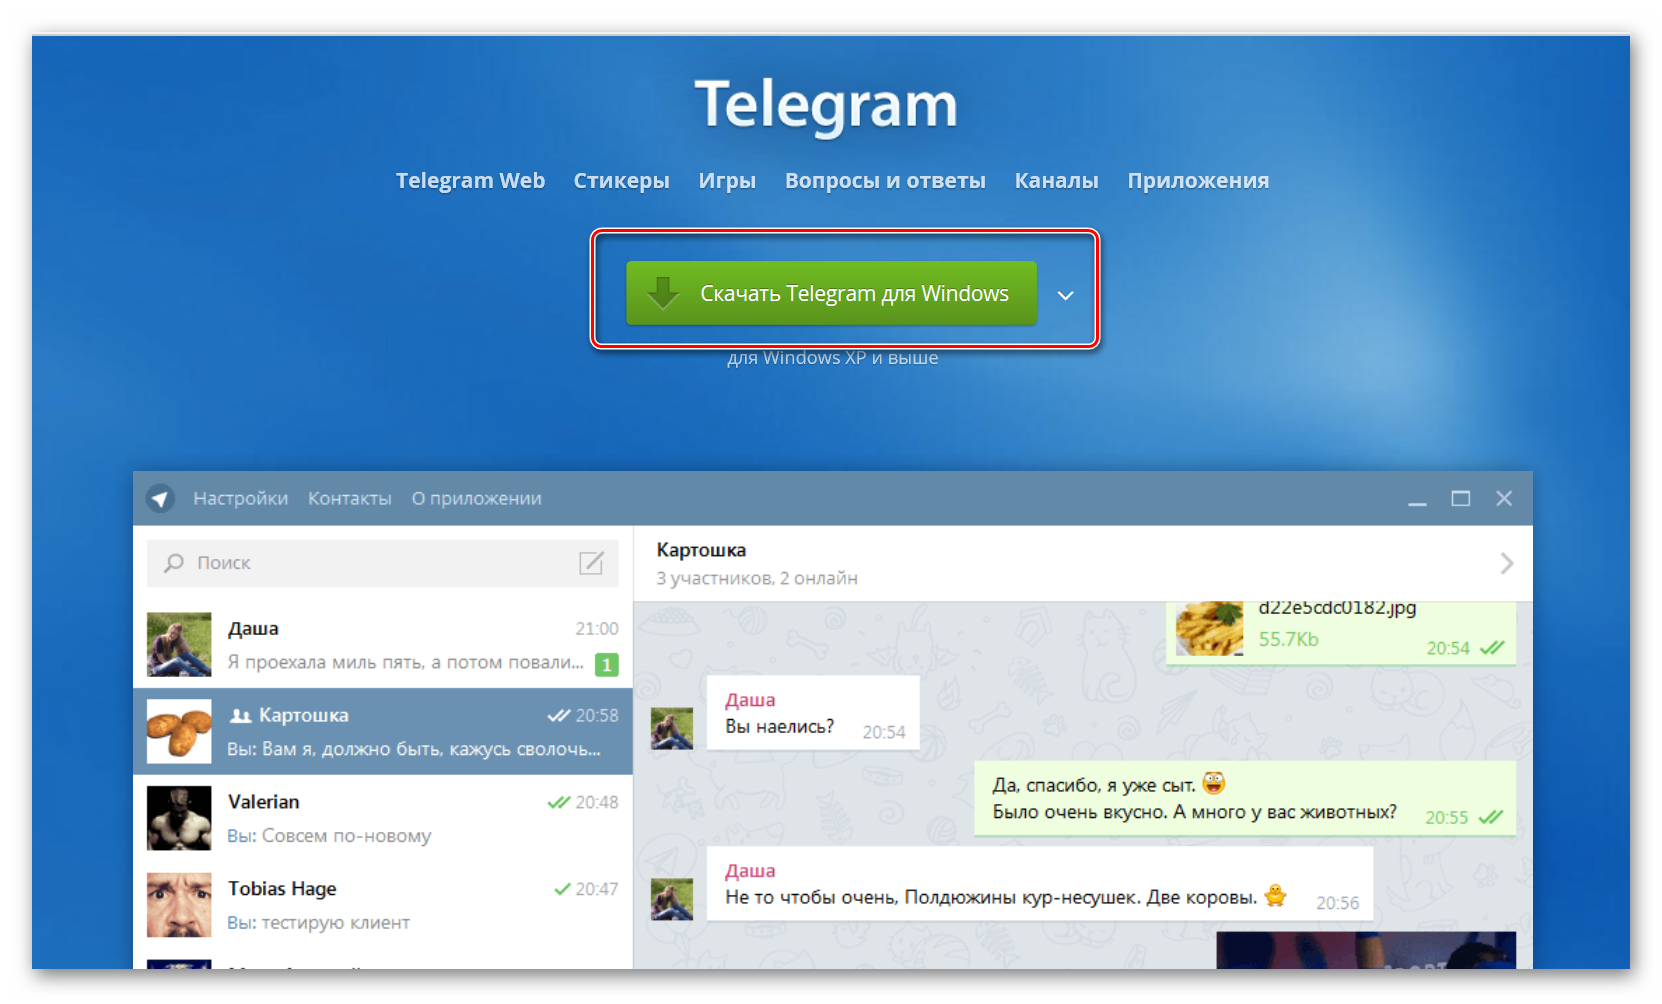 Telegram profil. Профиль в телеграмме. Телеграмм web. Веб приложение в телеграм. Telegram web application